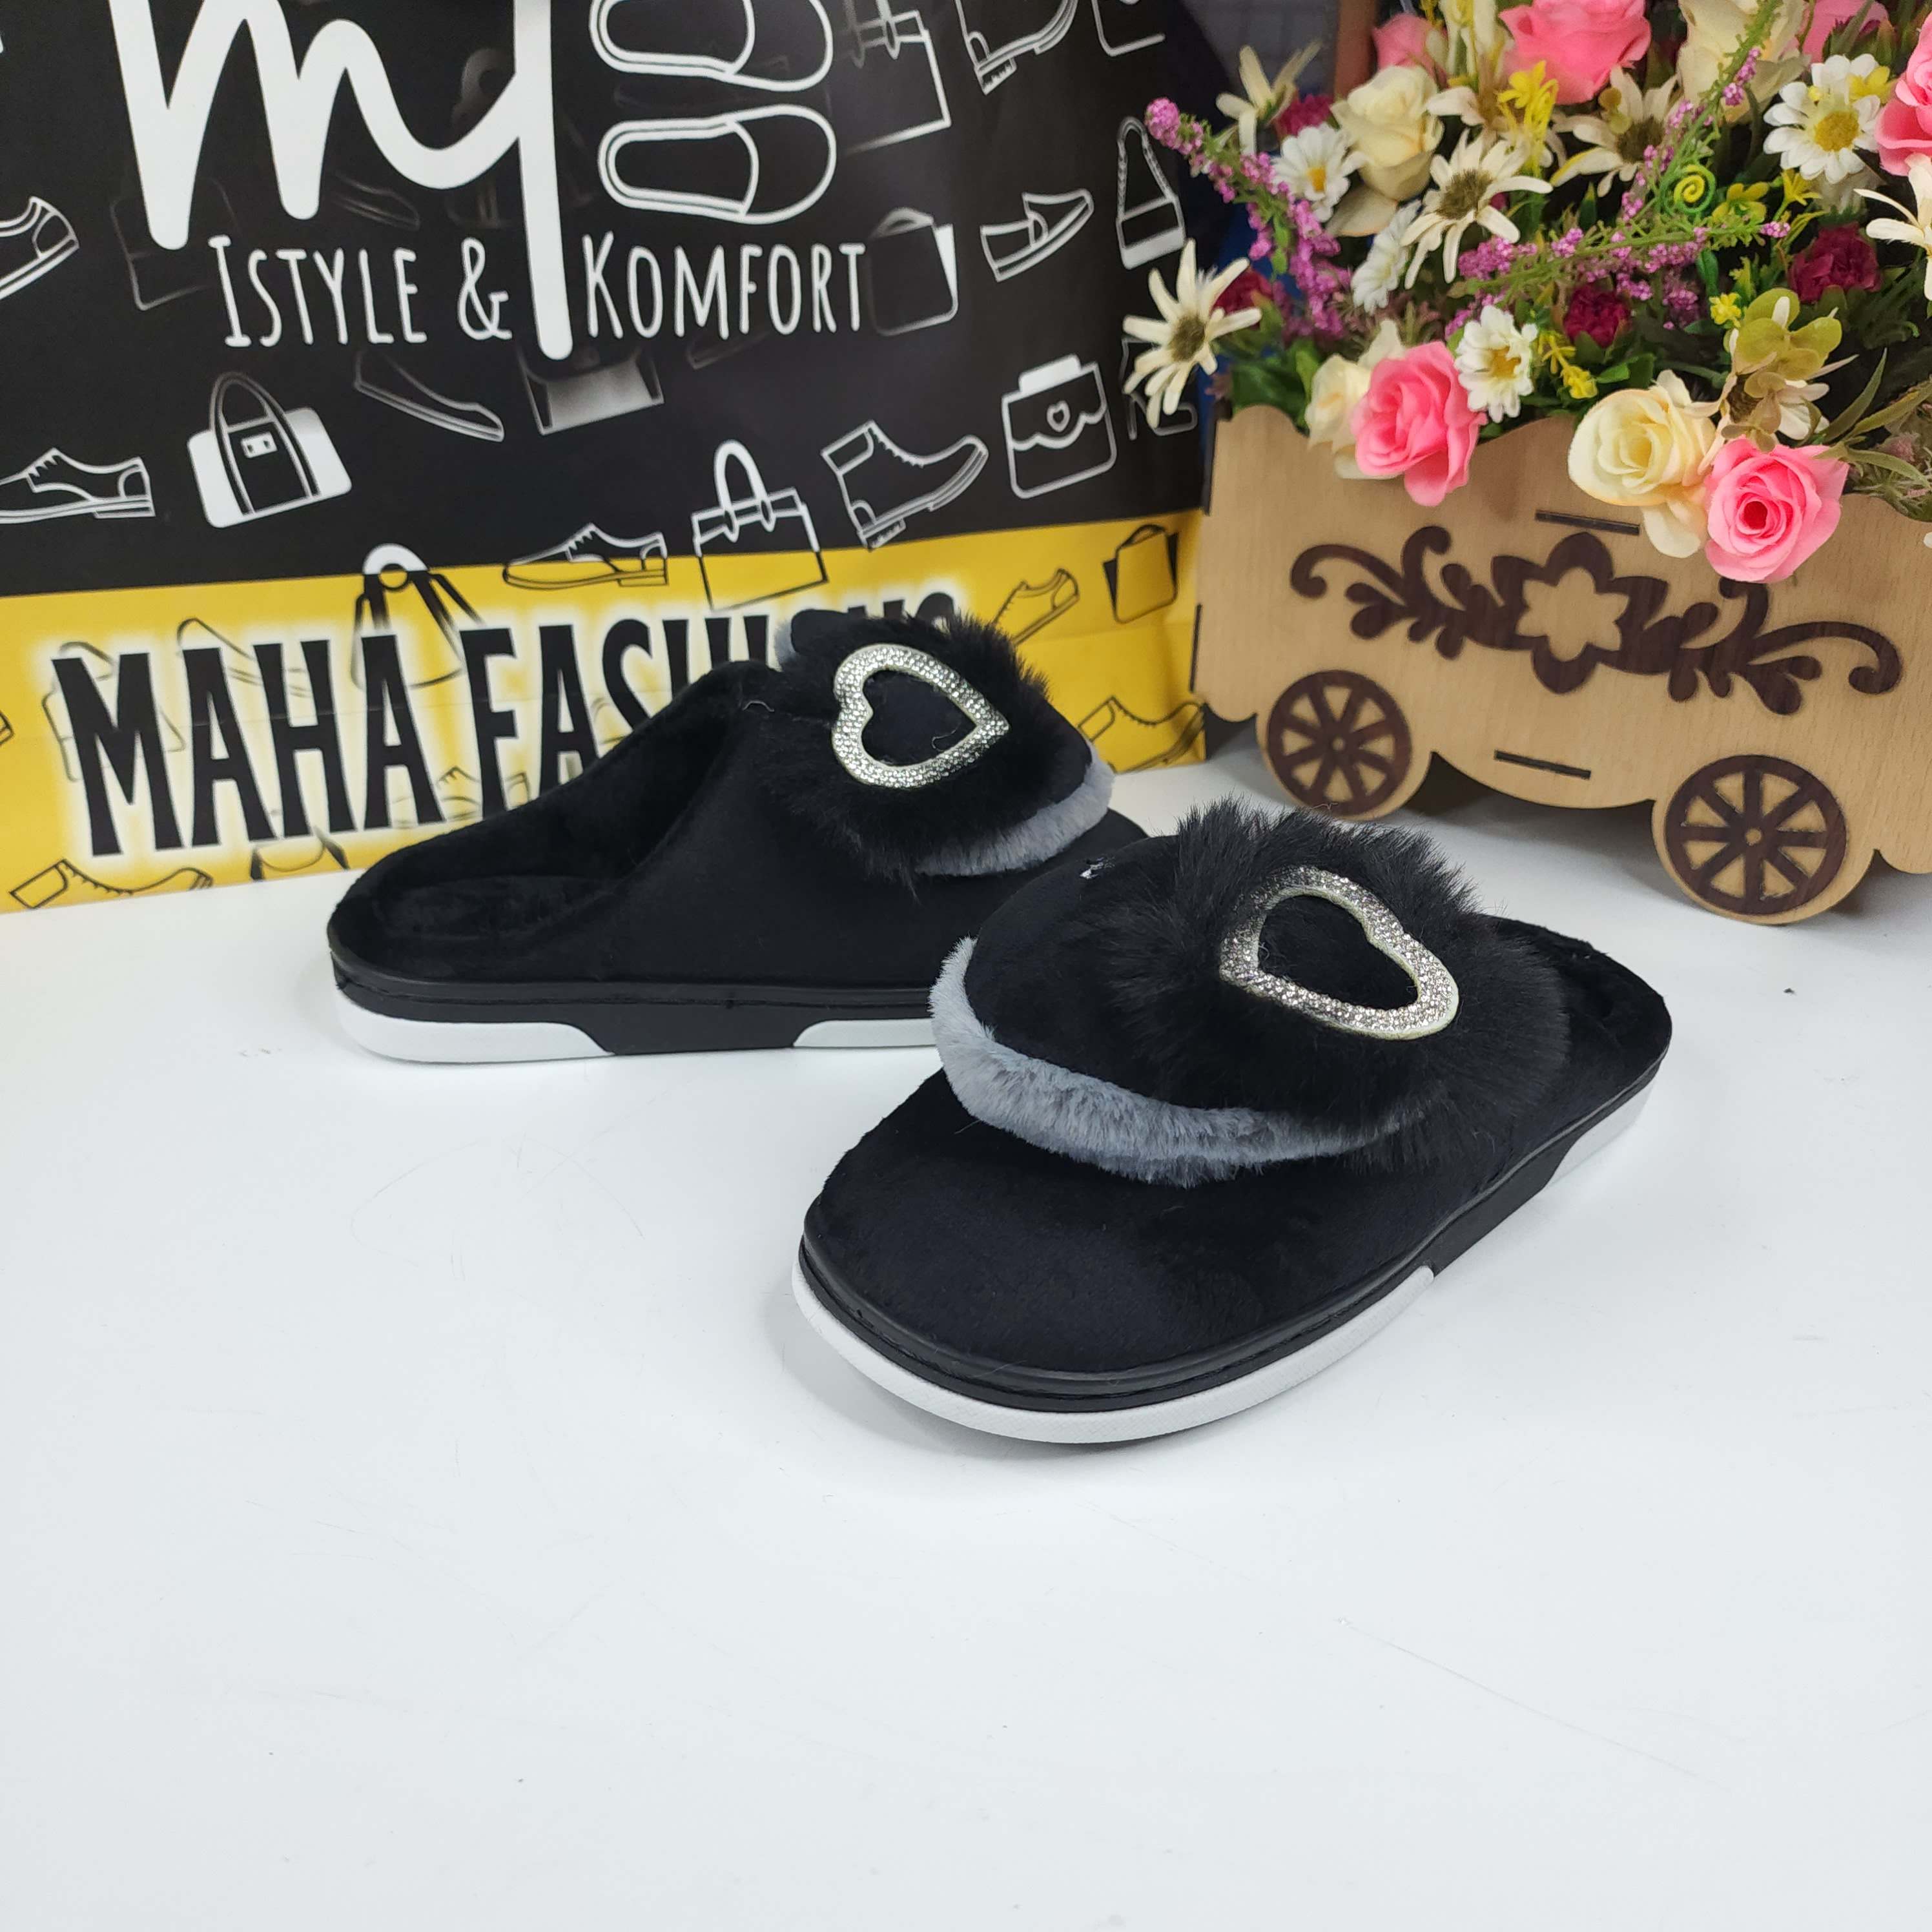 Black Fur Mules - Maha fashions -  